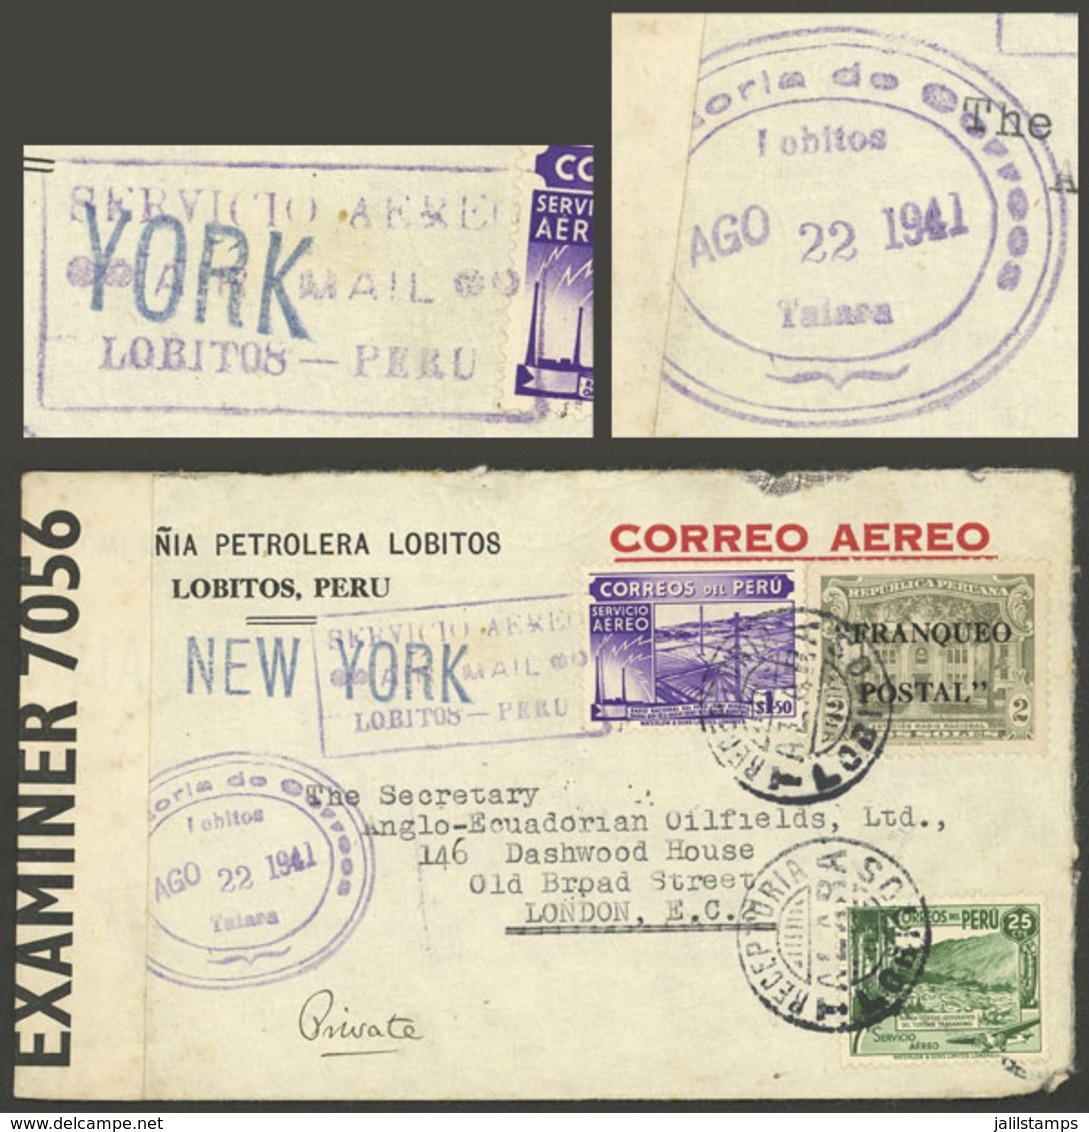 PERU: 22/AU/1941 Lobitos - England, Airmail Cover Franked With 3.75S., With The Rare Cancel "RECEPTORIA LOBITOS - TALARA - Peru